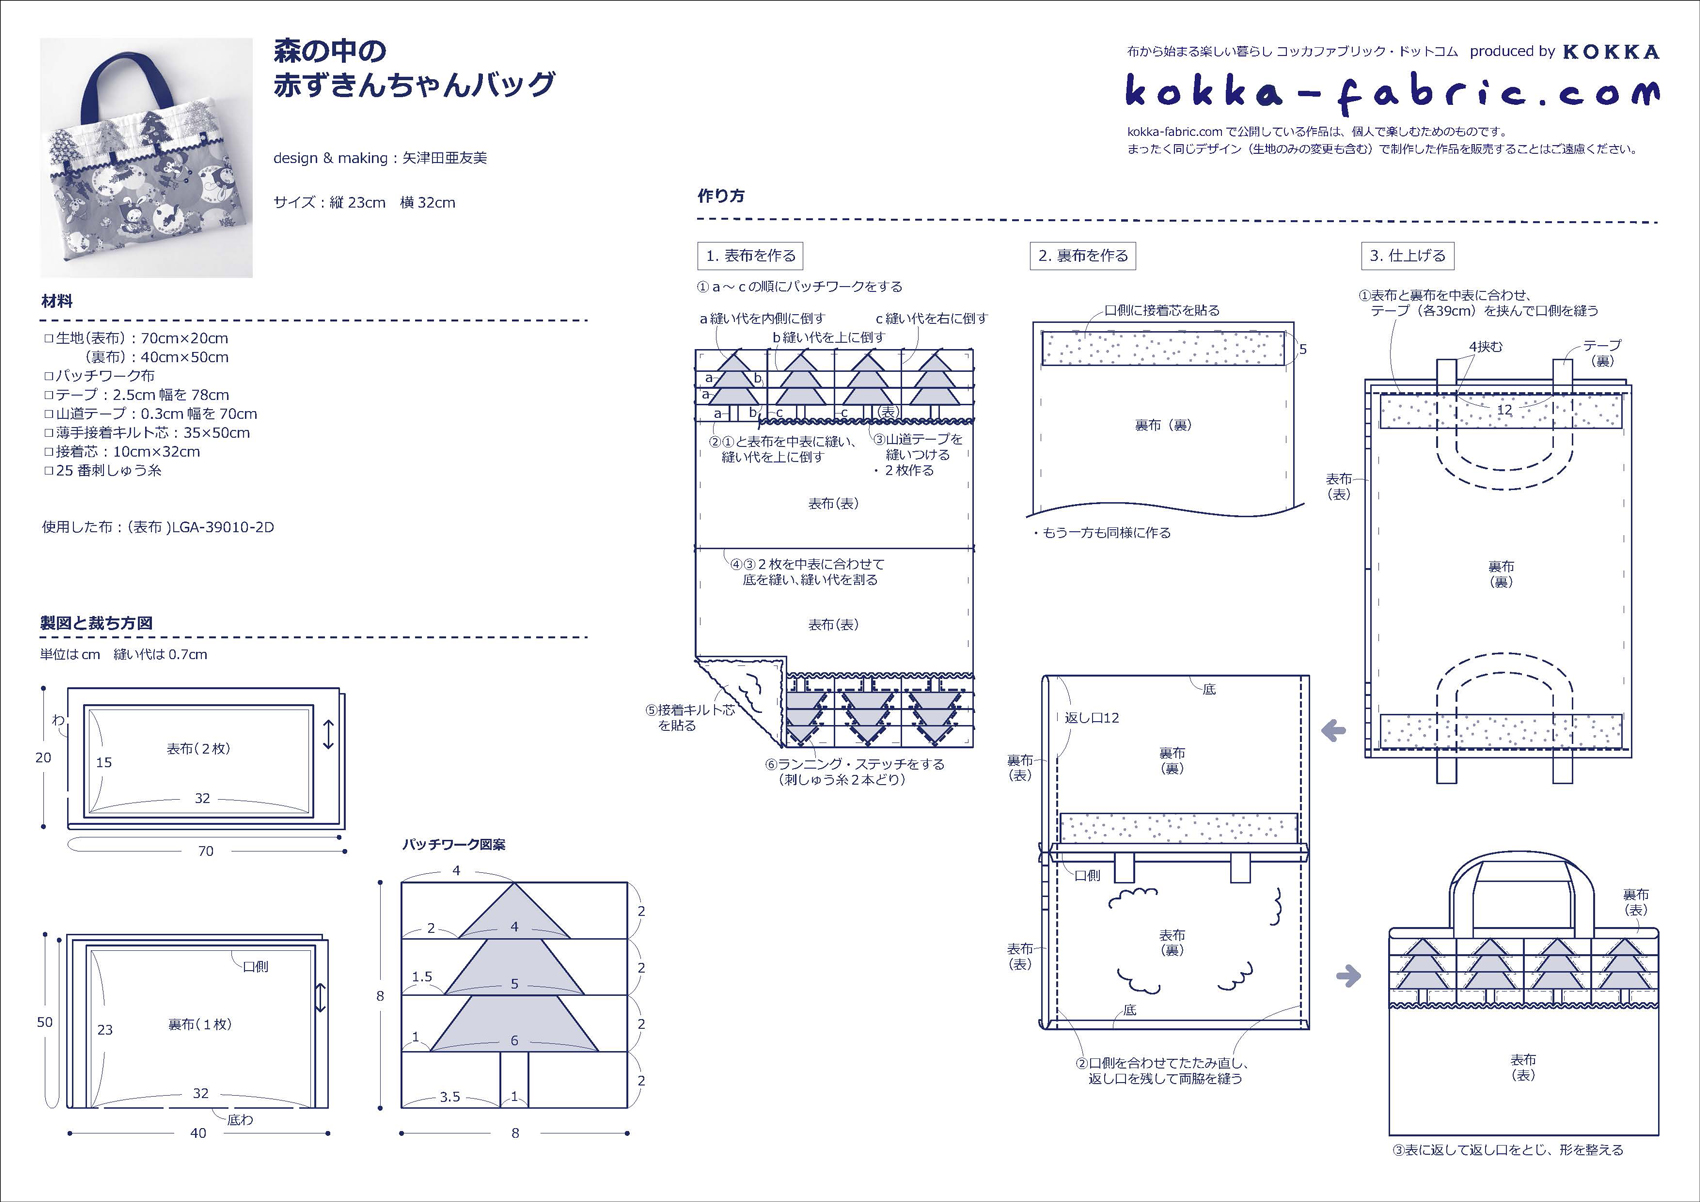 ツリーのパッチワークが可愛い♪ 森の中の赤ずきんちゃんバッグの作り方 – kokka-fabric.com